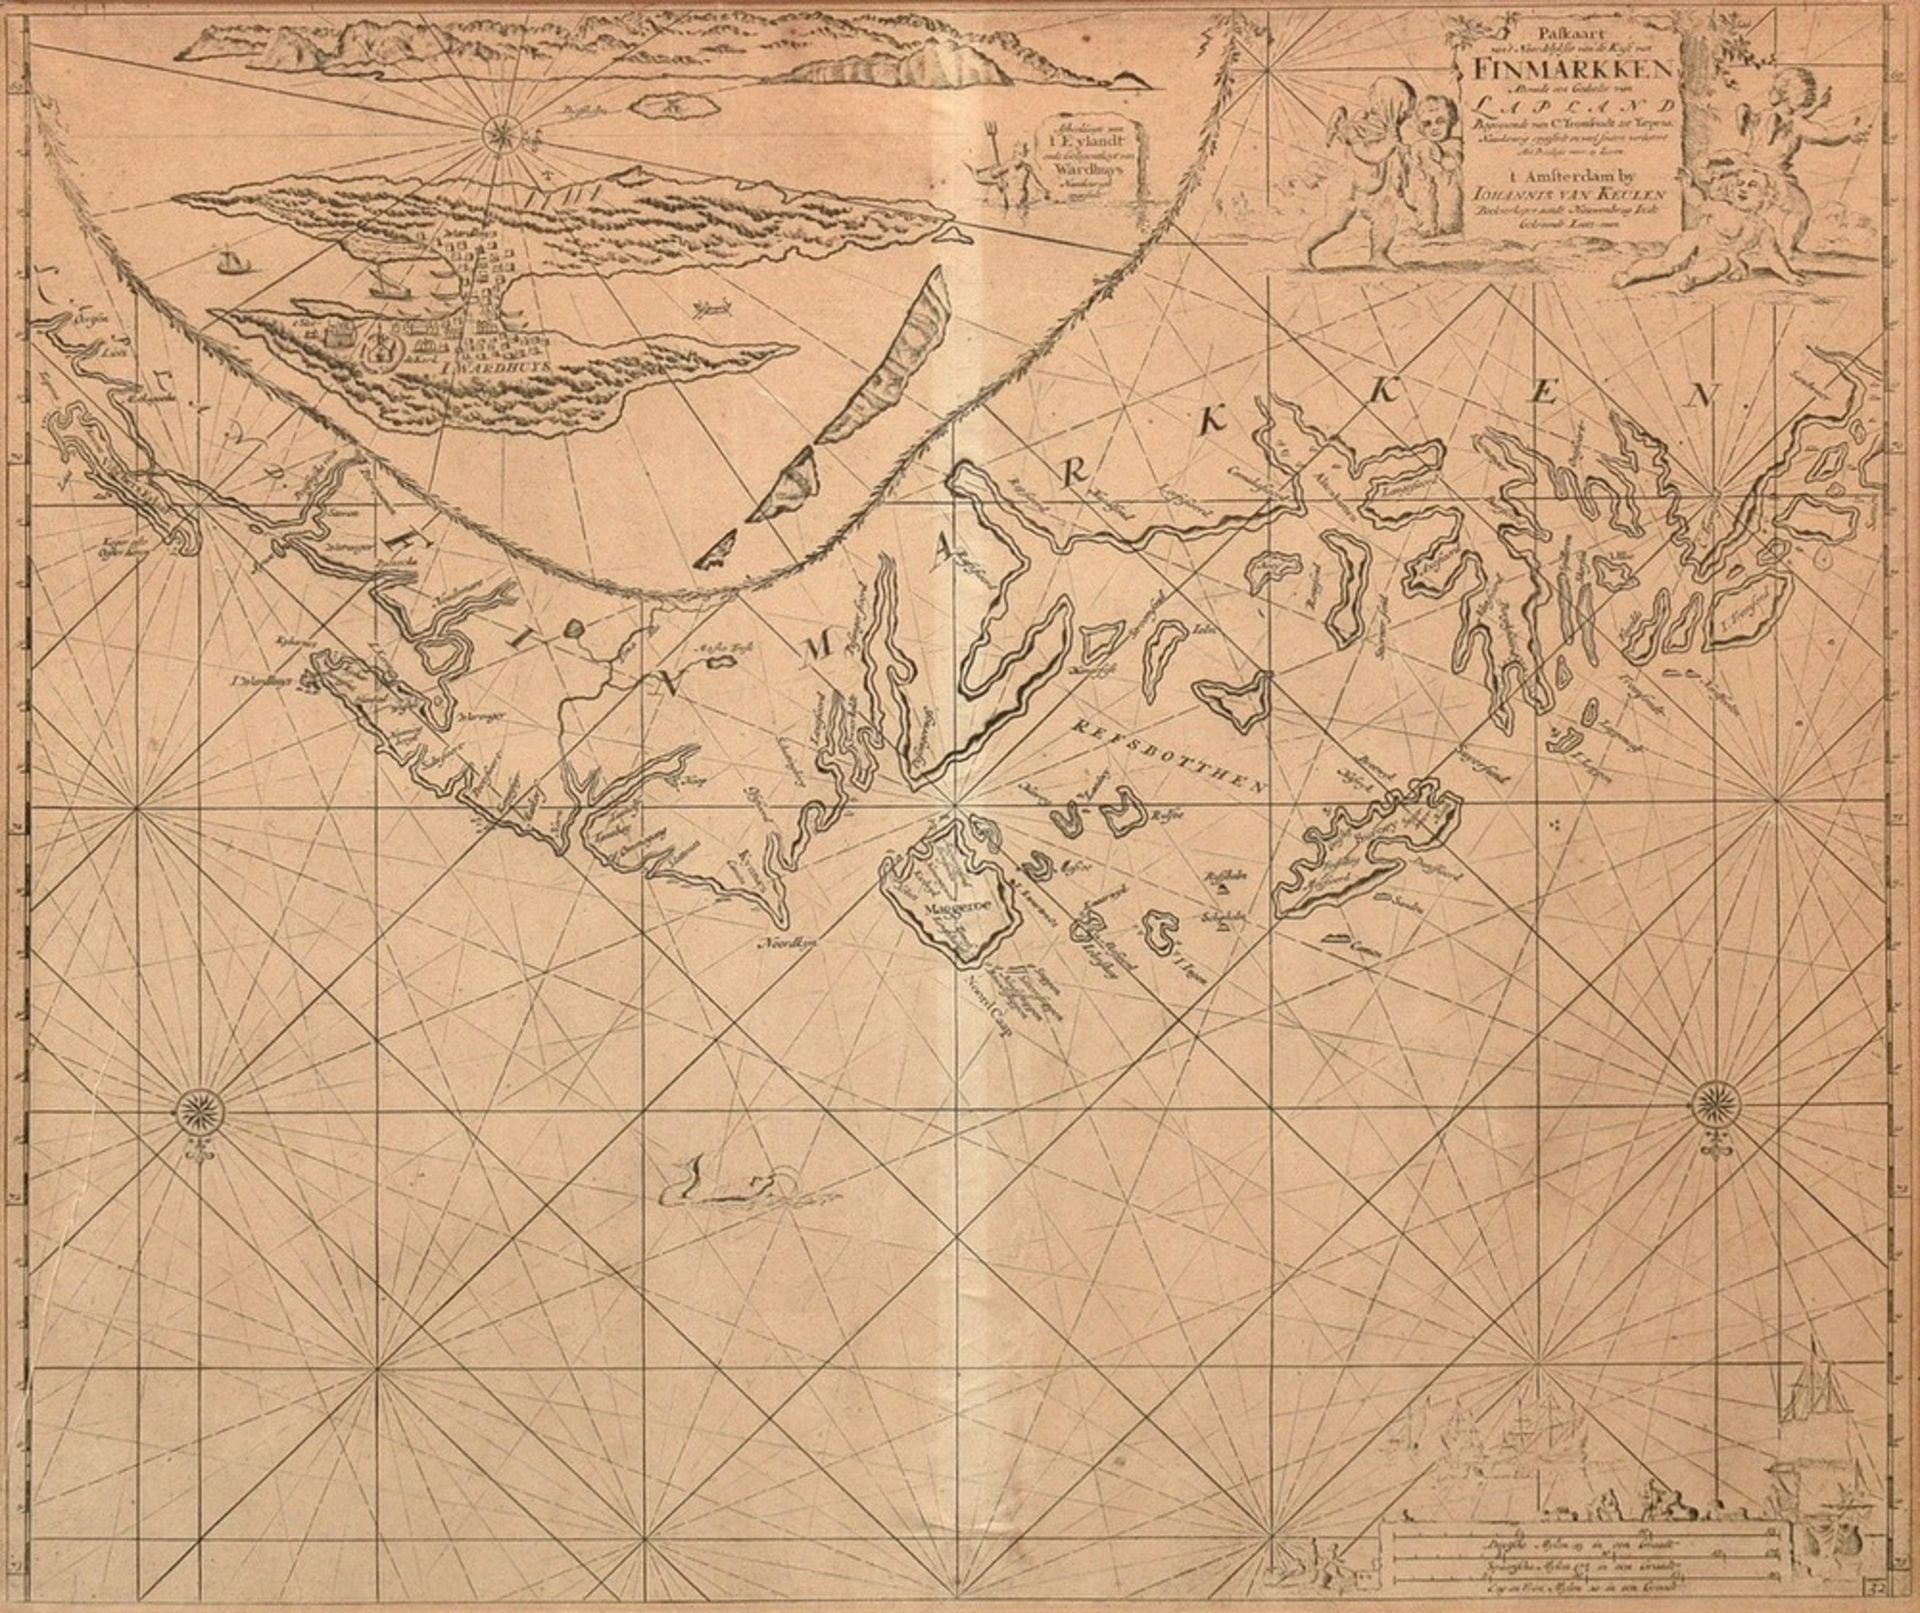 Keulen, Johannes van (1654-1715) „Paskaart vant Noordelykste van de kust van Finmarken … Lapland“, 